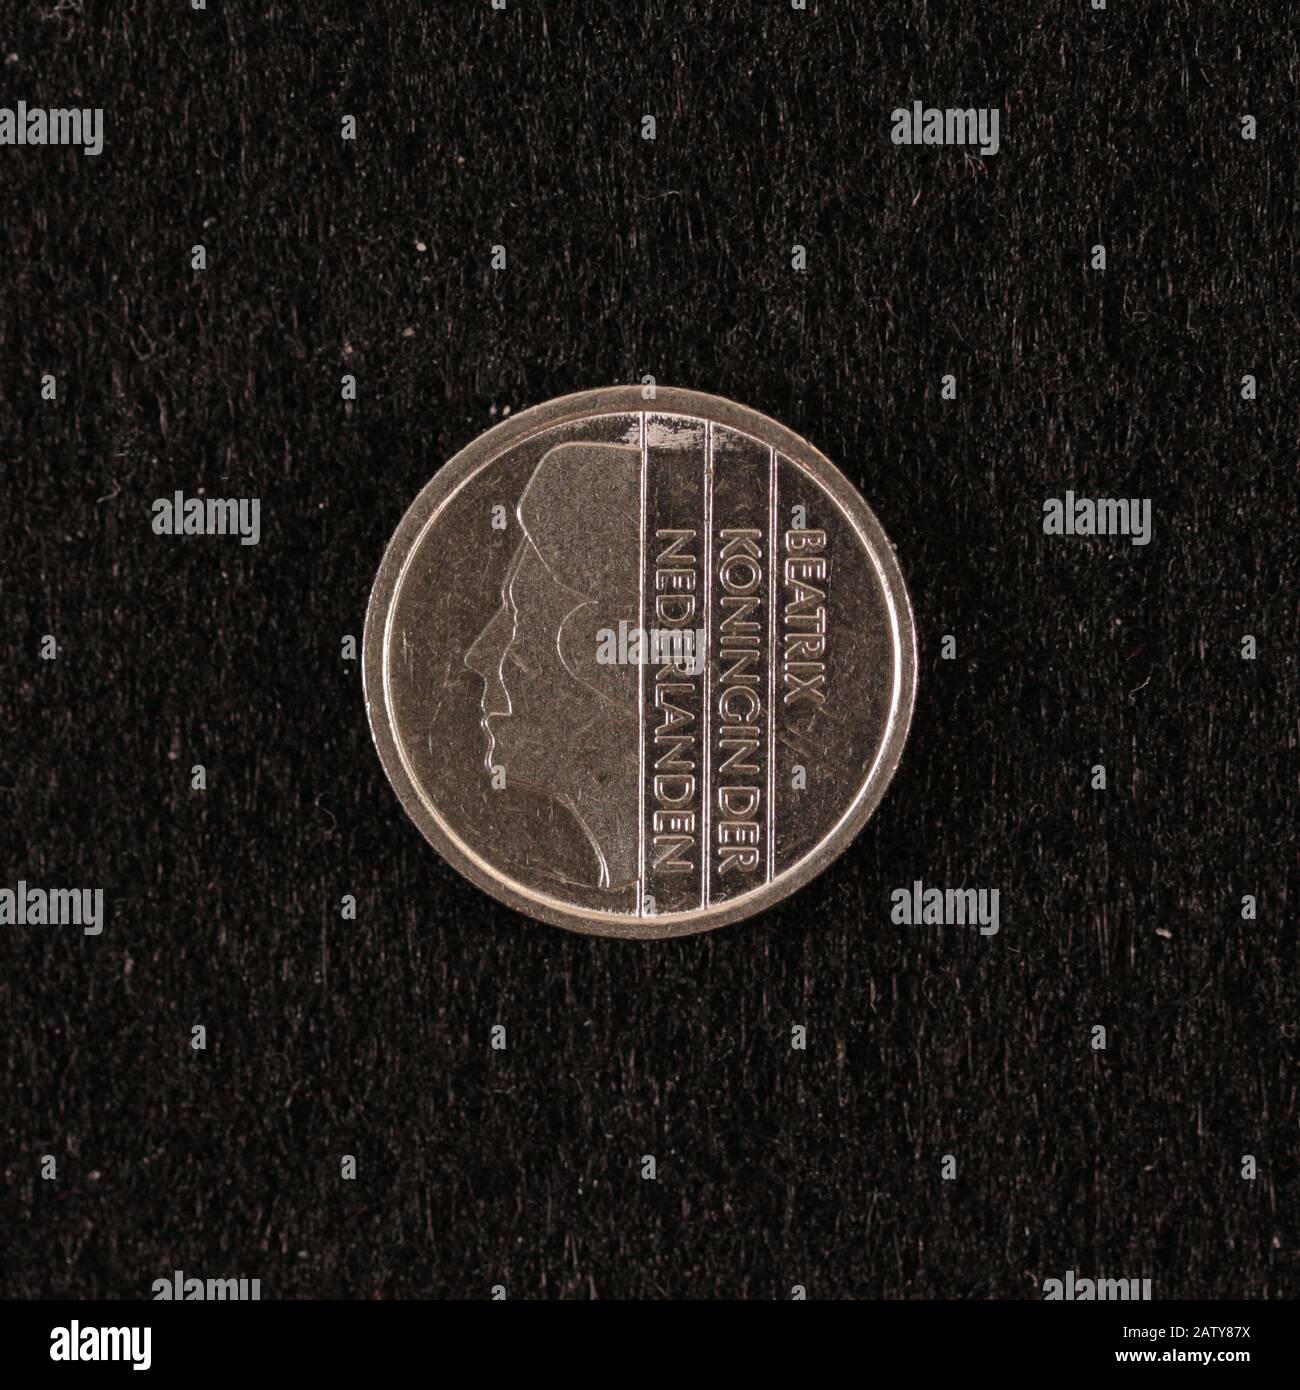 Rückseite einer ehemalien Niederländischen 25 Cent Münze Foto Stock